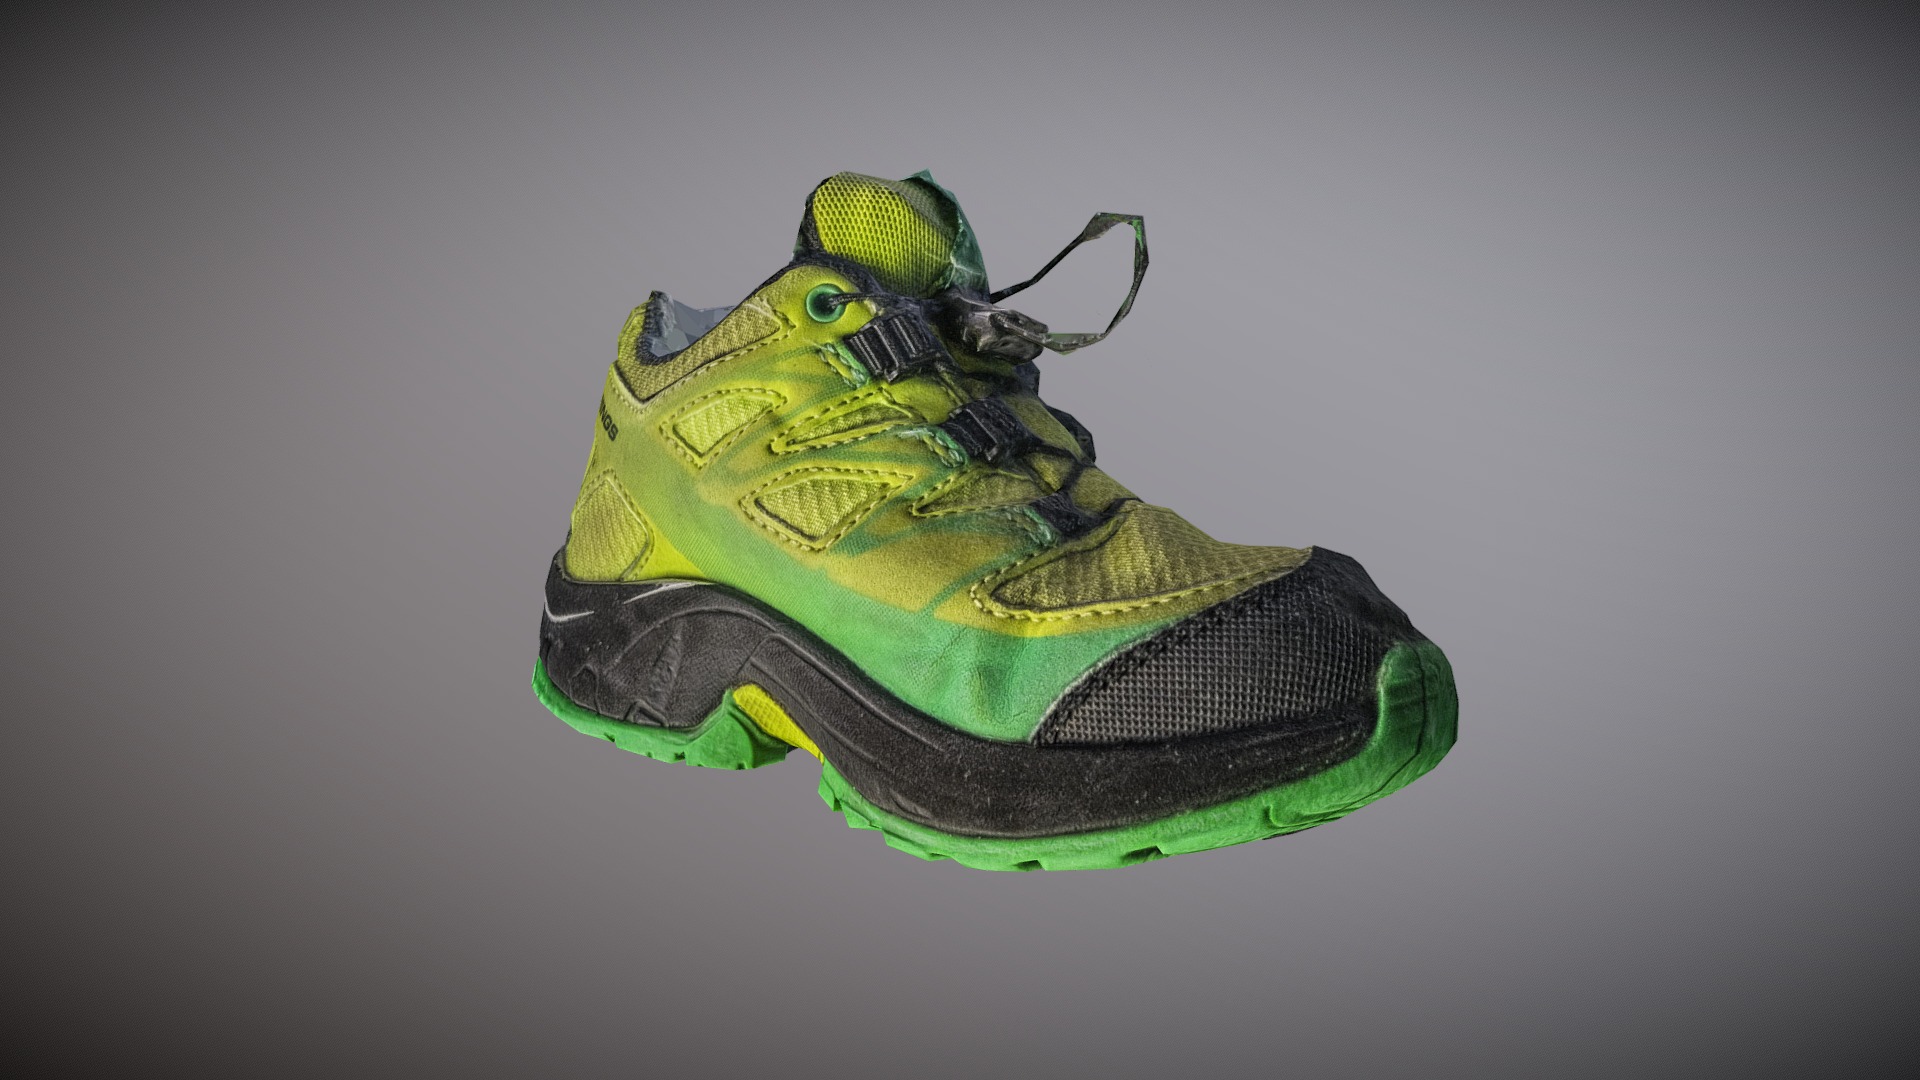 3D model Kid shoe quick photogrammetry scan - This is a 3D model of the Kid shoe quick photogrammetry scan. The 3D model is about a green and yellow shoe.